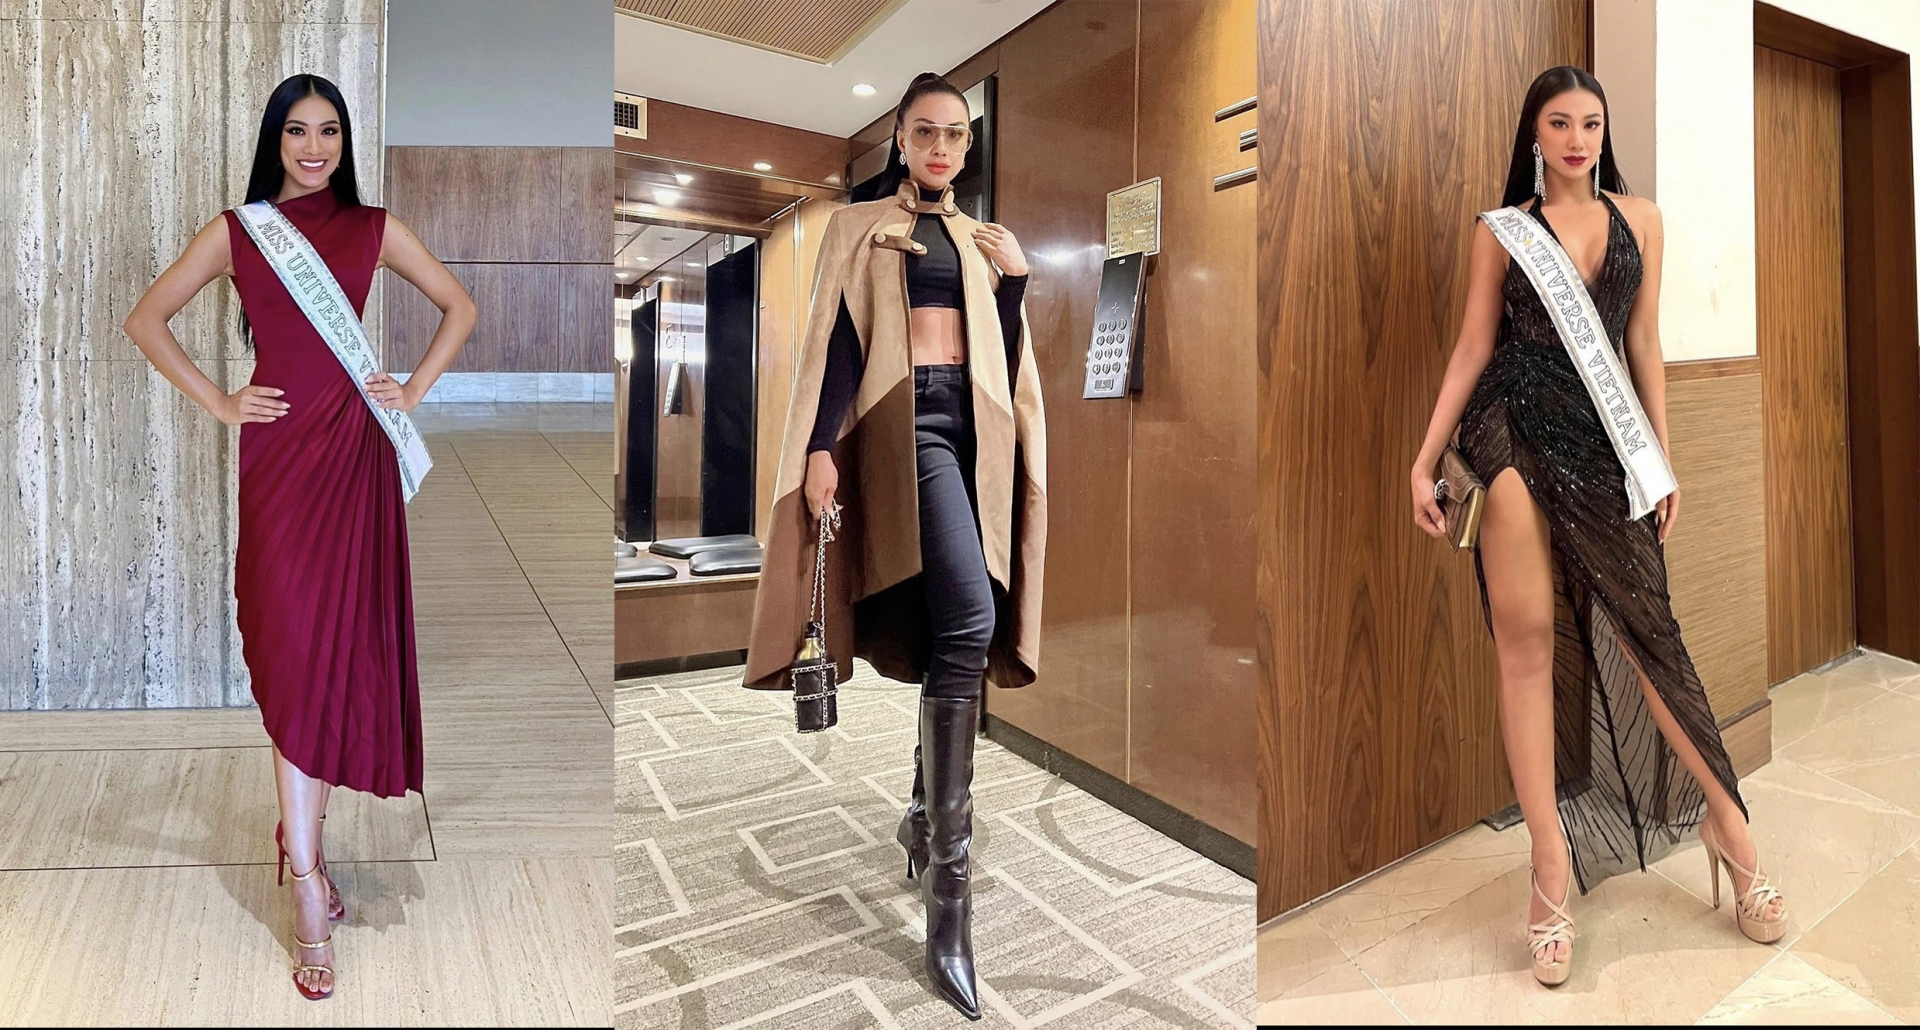 Một số outfit nổi bật khác của Kim Duyên khi tham dự Miss Universe 2021, cô nàng cân đẹp mọi phong cách từ dịu dàng, nữ tính đến sành điệu, thời thượng pha chút quyến rũ. Điểm chung là nàng hậu luôn phối cùng phụ kiện hàng hiệu từ Gucci, LV,...